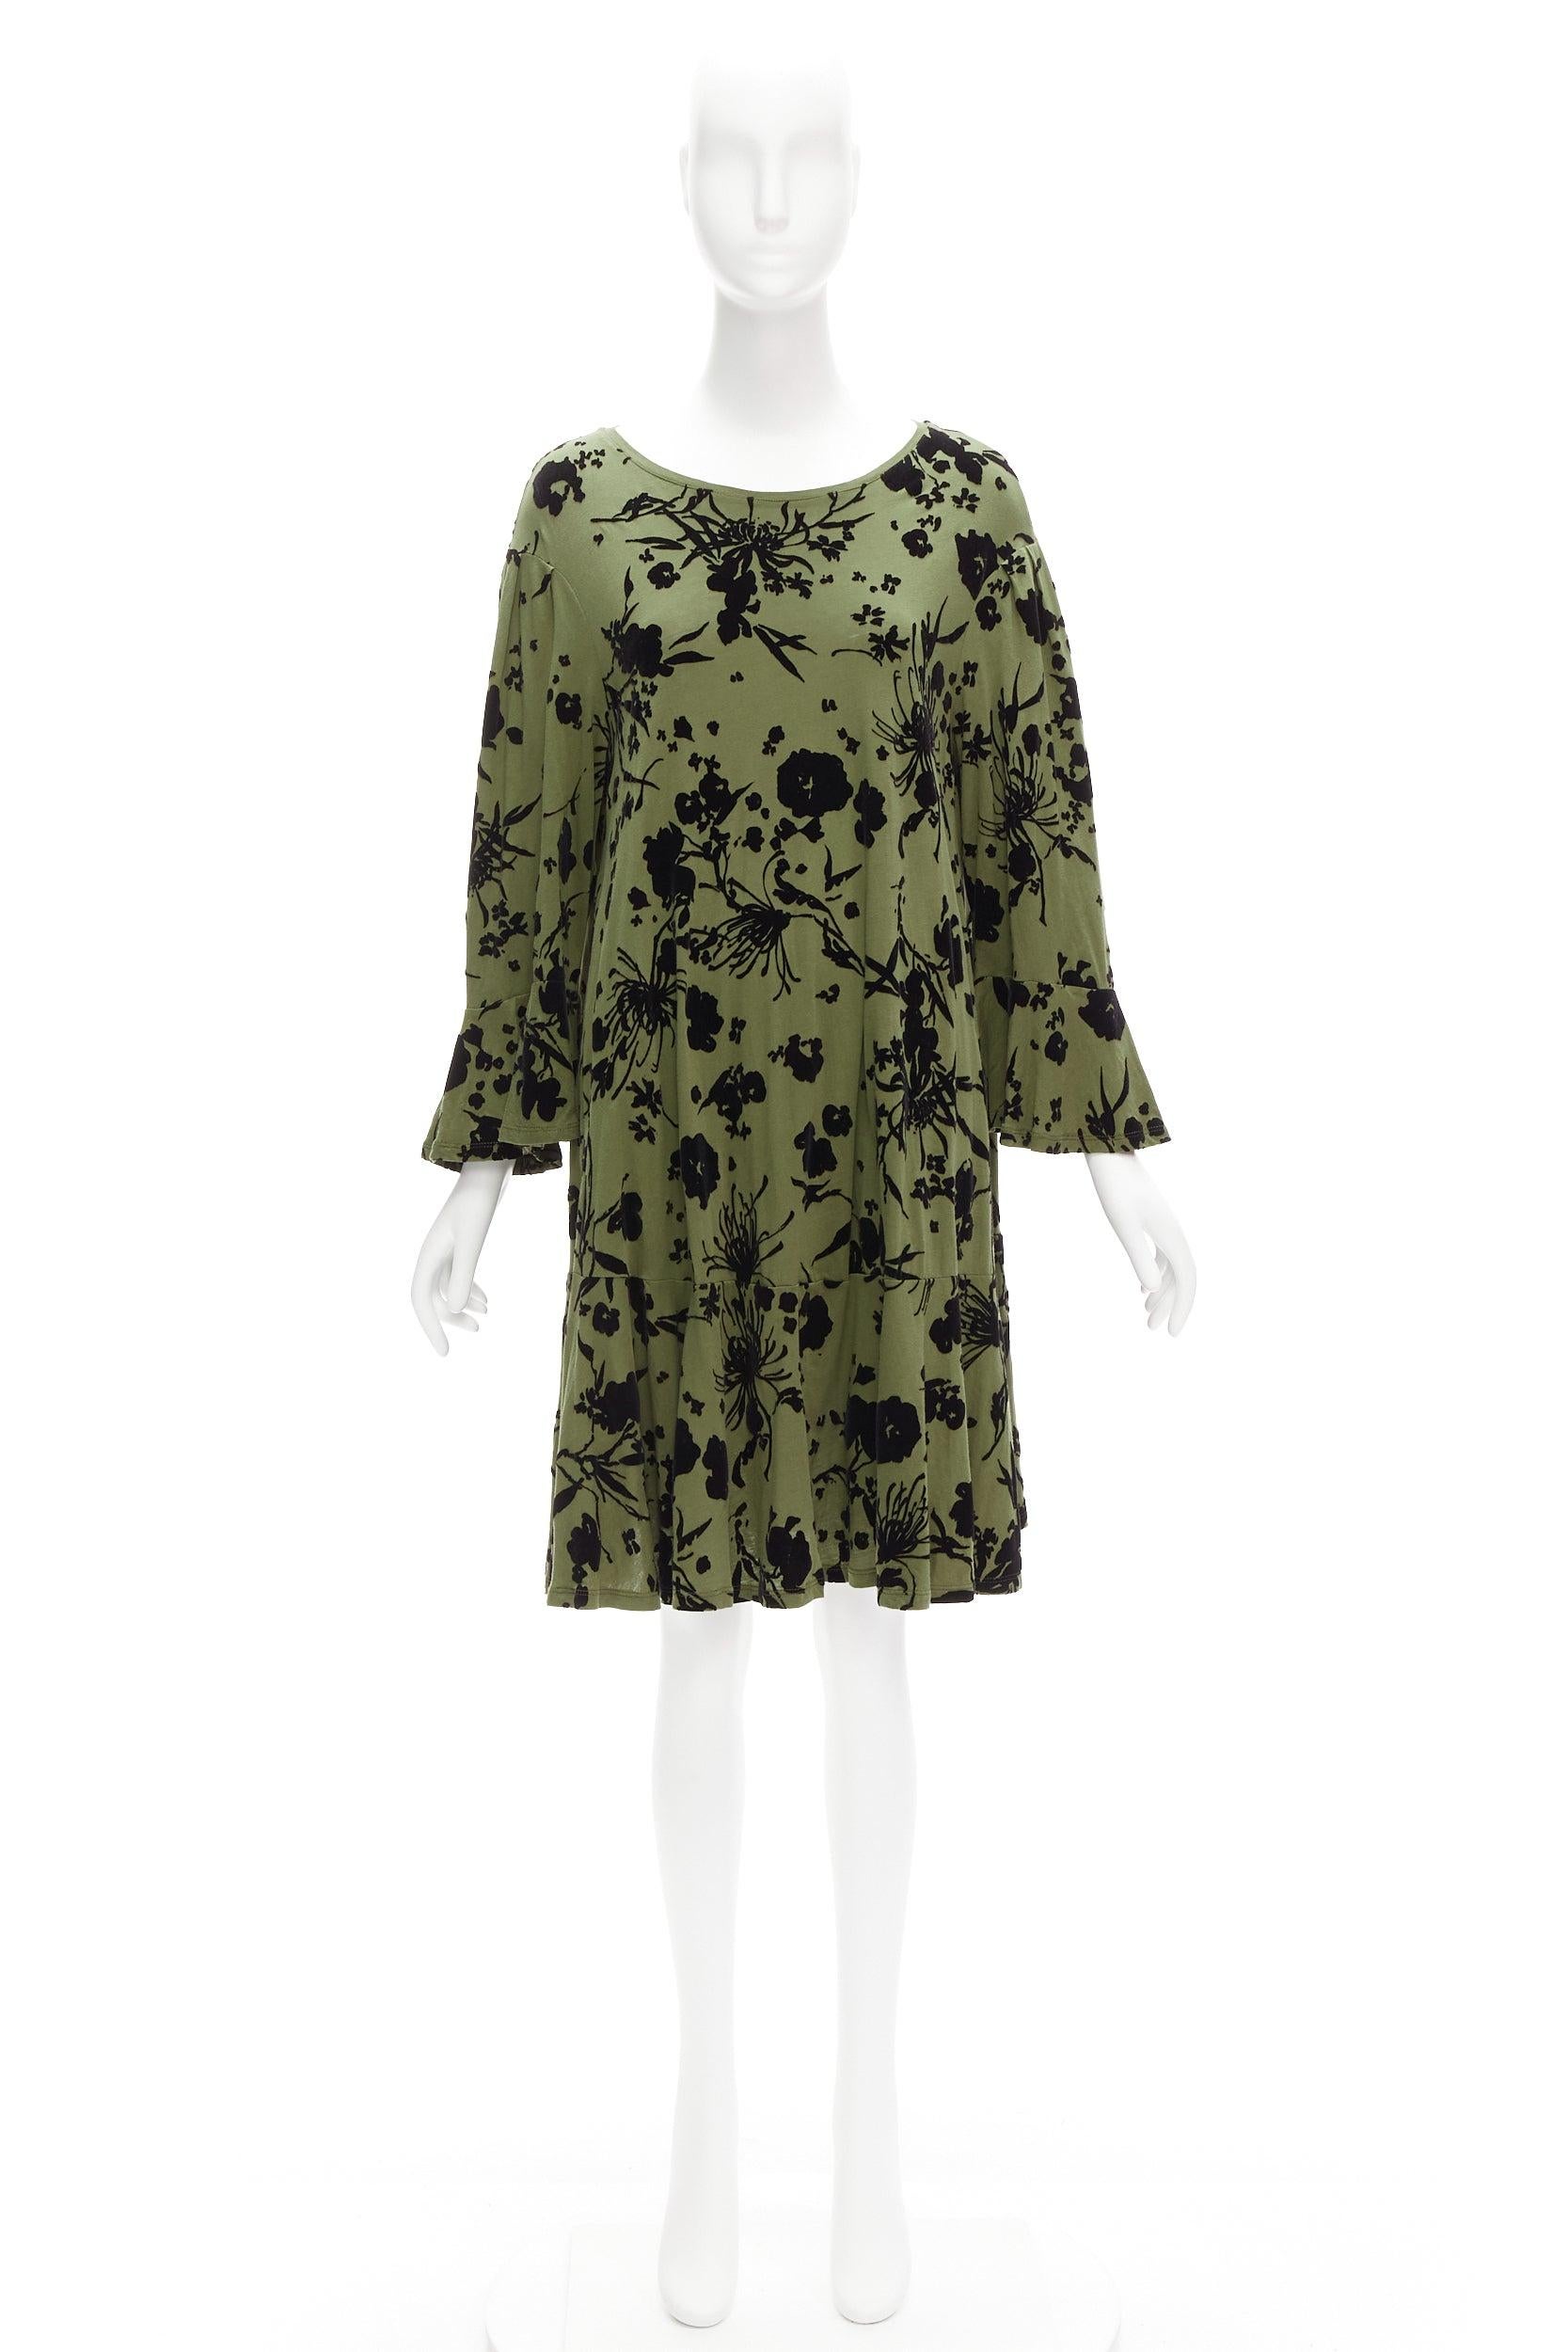 DRIES VAN NOTEN green cotton floral devore bell sleeve flutter dress XS For Sale 4